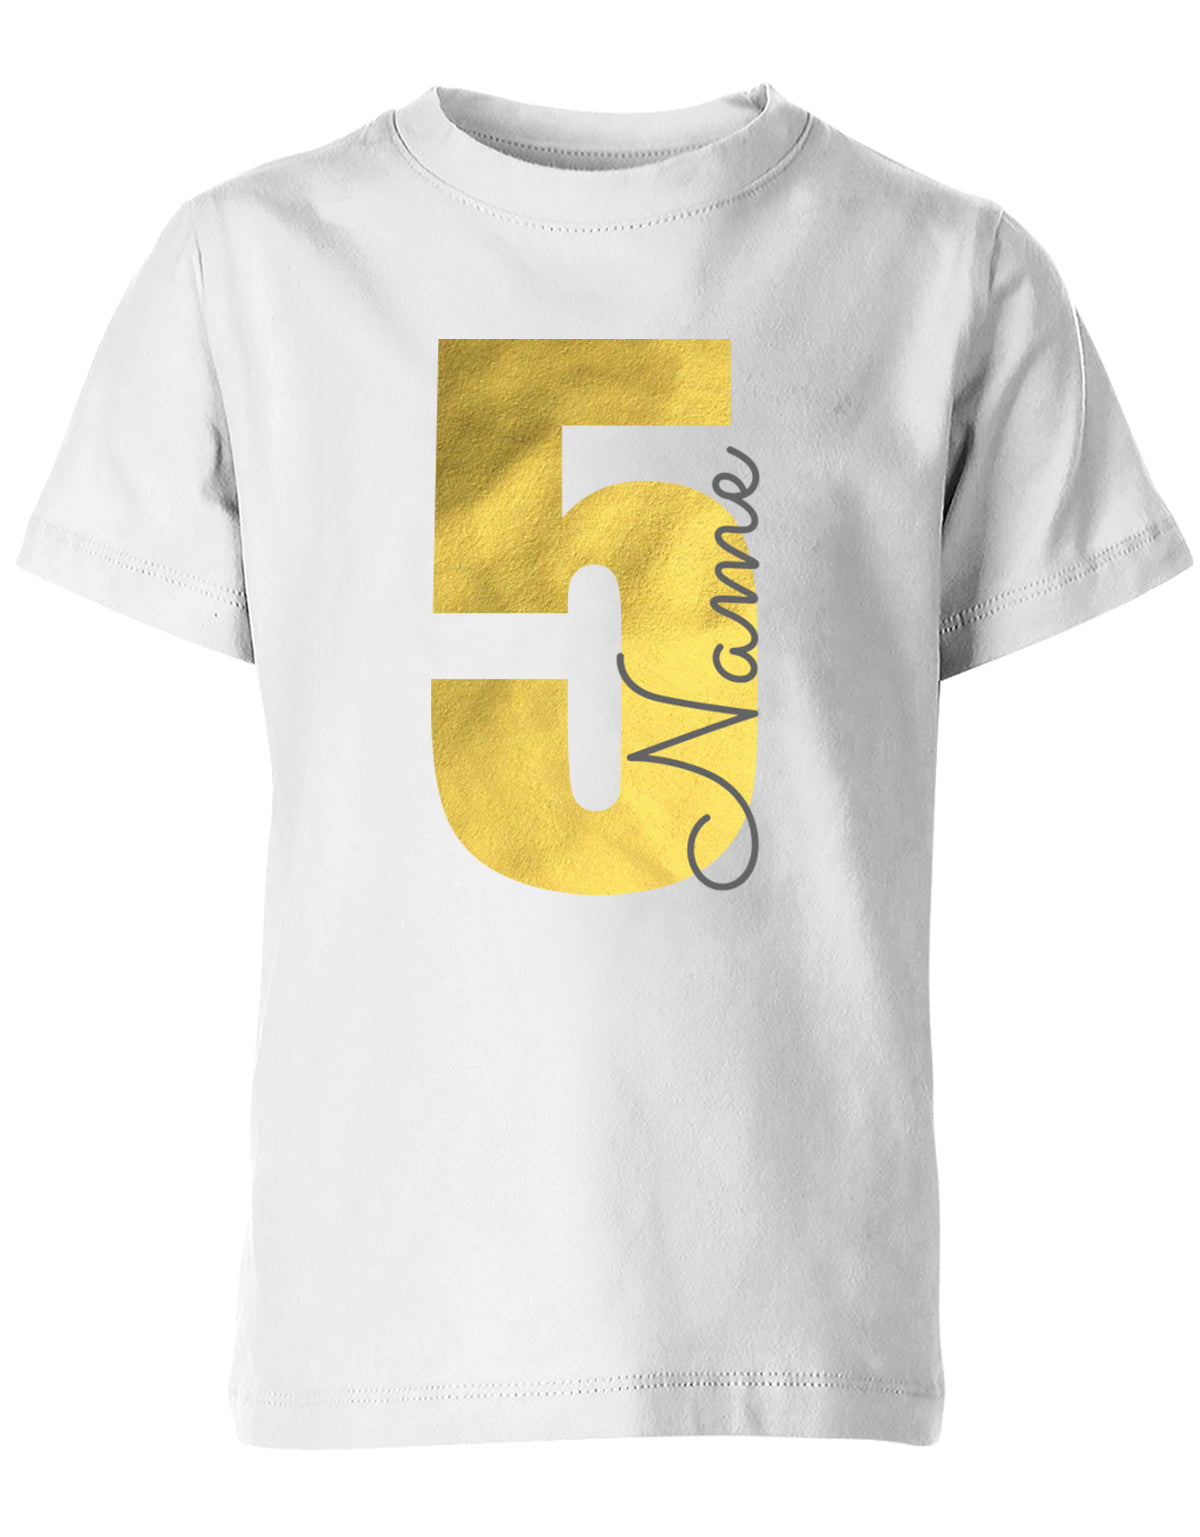 Geburtstags T-Shirt 5 Jahre Junge und Mädchen Goldene 5 mit Namen Weiss